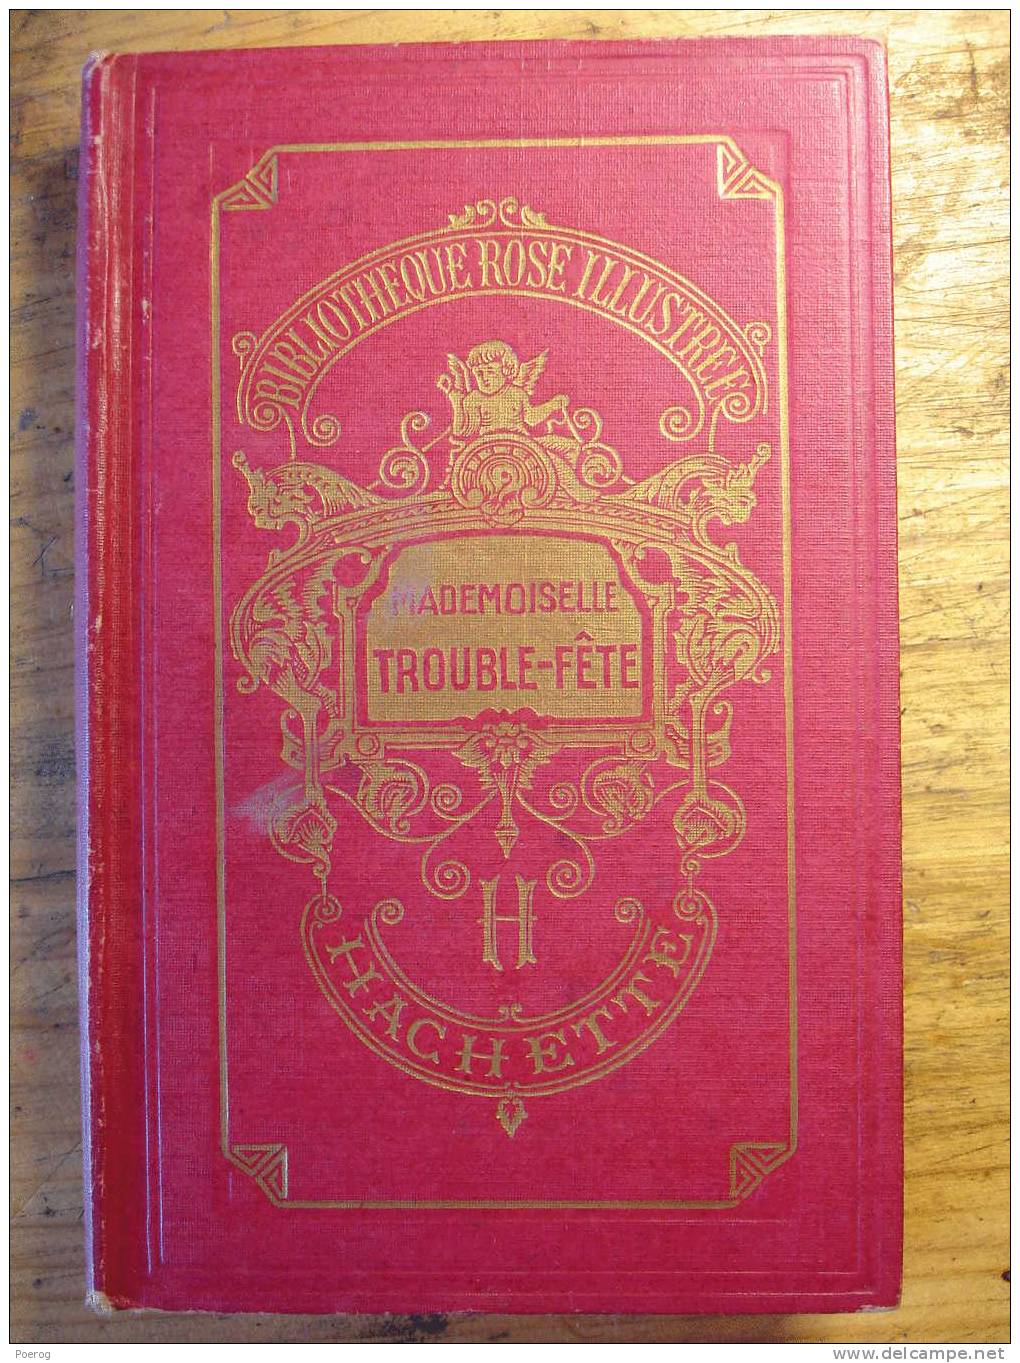 MADEMOISELLE TROUBLE FETE - MAGDELEINE DU GENESTOUX - 1946 HACHETTE BIBLIOTHEQUE ROSE ILLUSTREE ILLUSTRATIONS A. PECOUD - Bibliothèque Rose